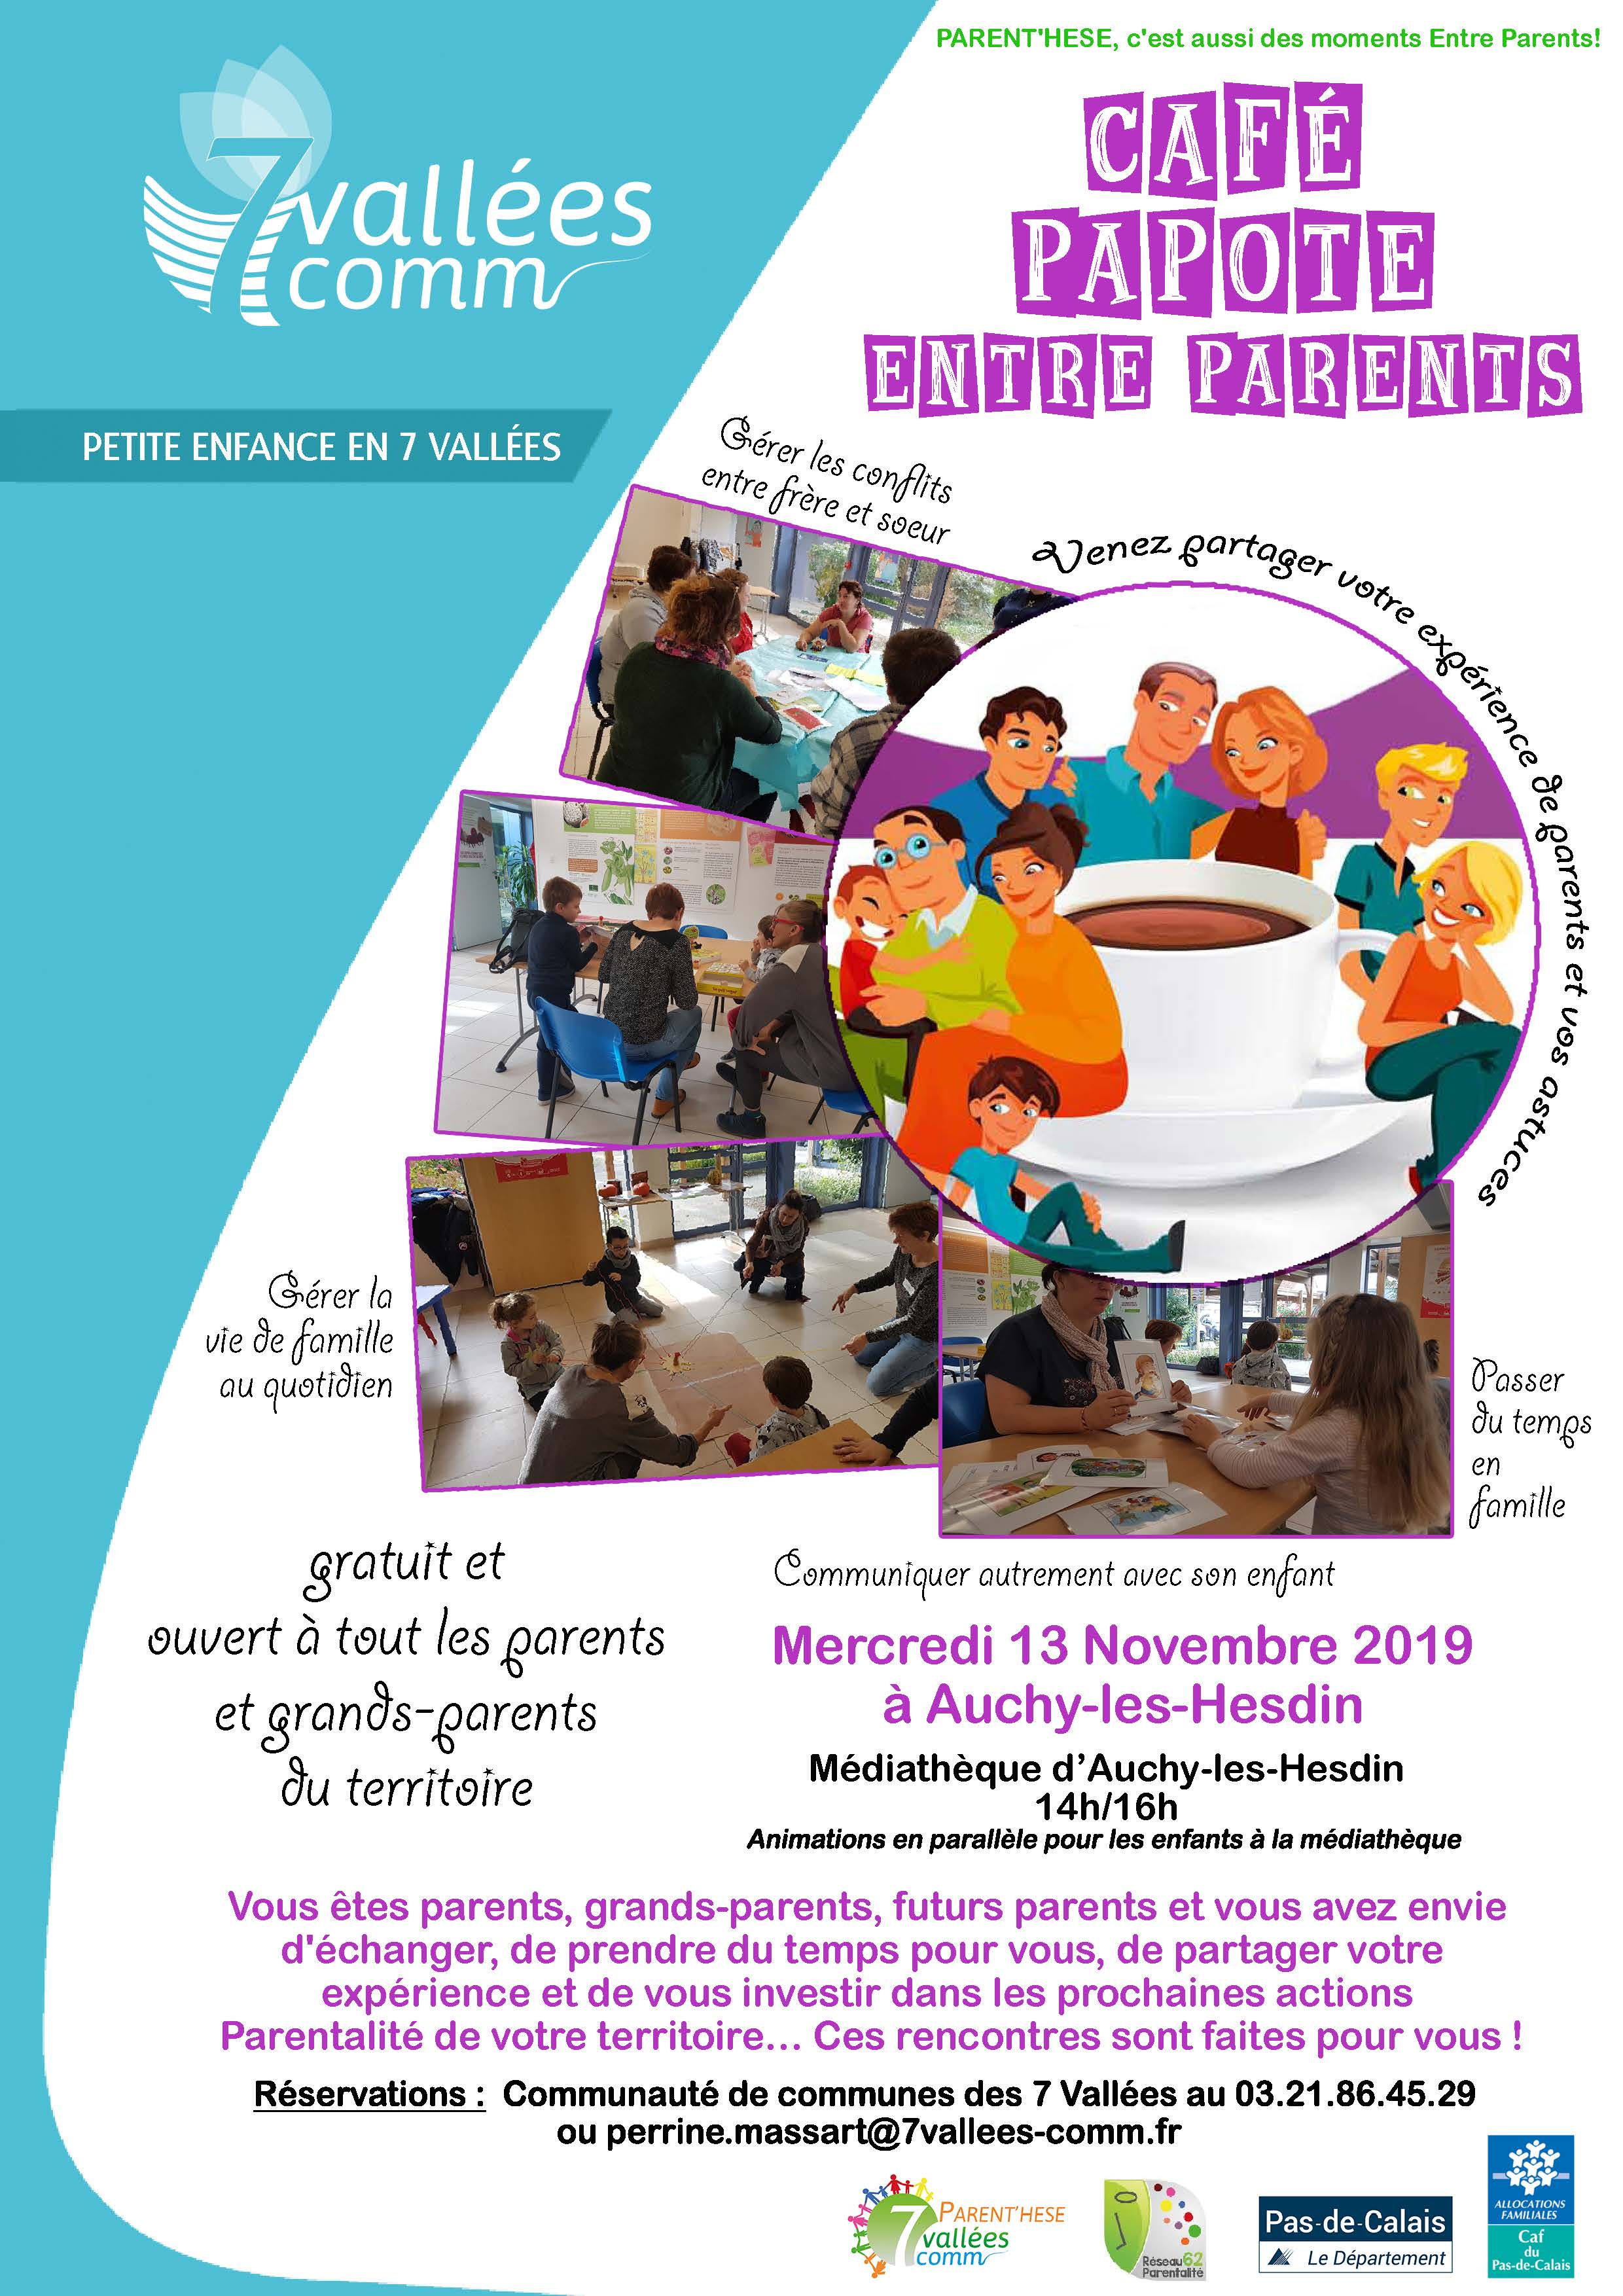 Café Papote entre Parents Nov 2019 Parent'hése